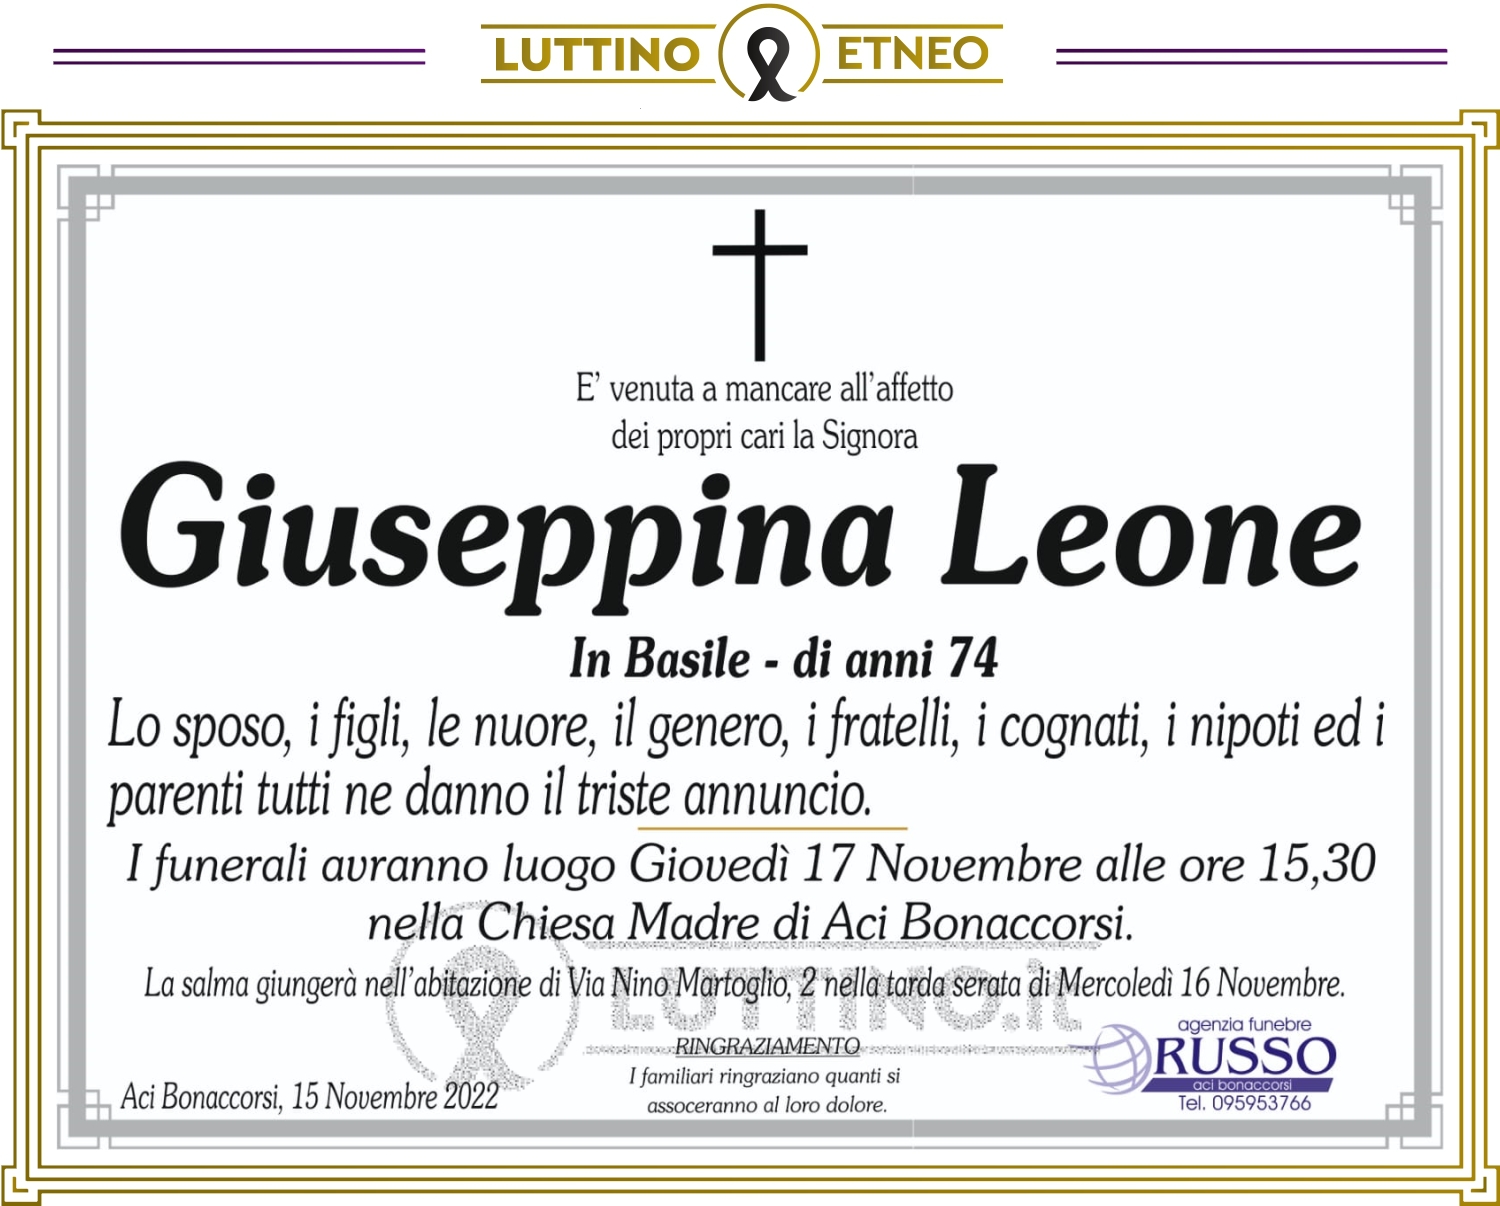 Giuseppina Leone